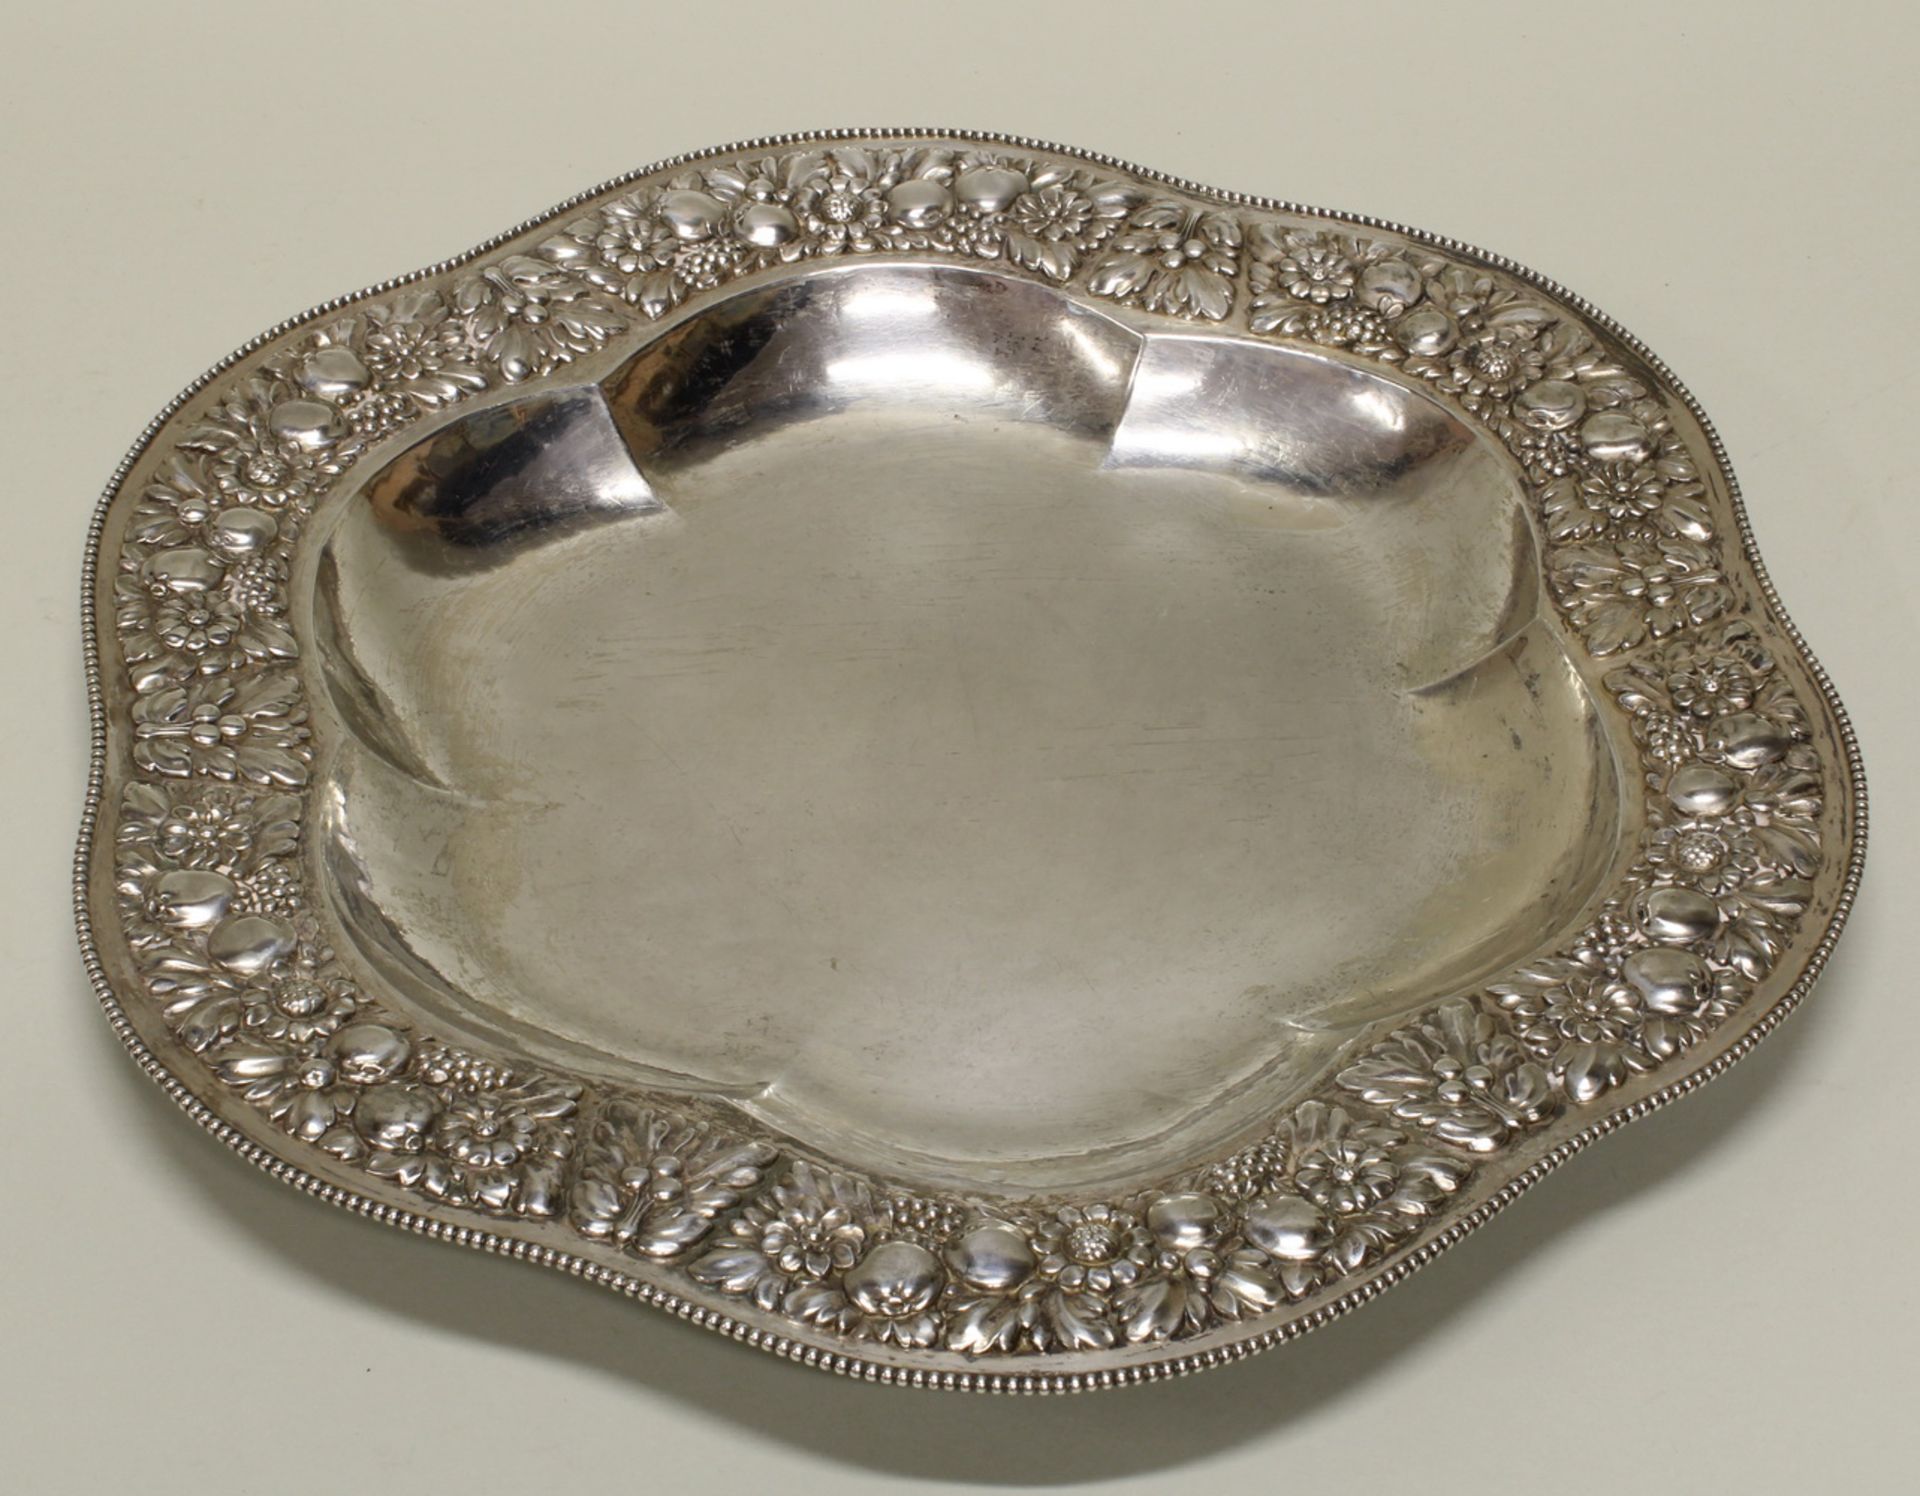 Platte, Silber 800, Bruckmann, gebuchteter Spiegel, floral reliefierte Fahne, Perlrand, ø 39 cm, c